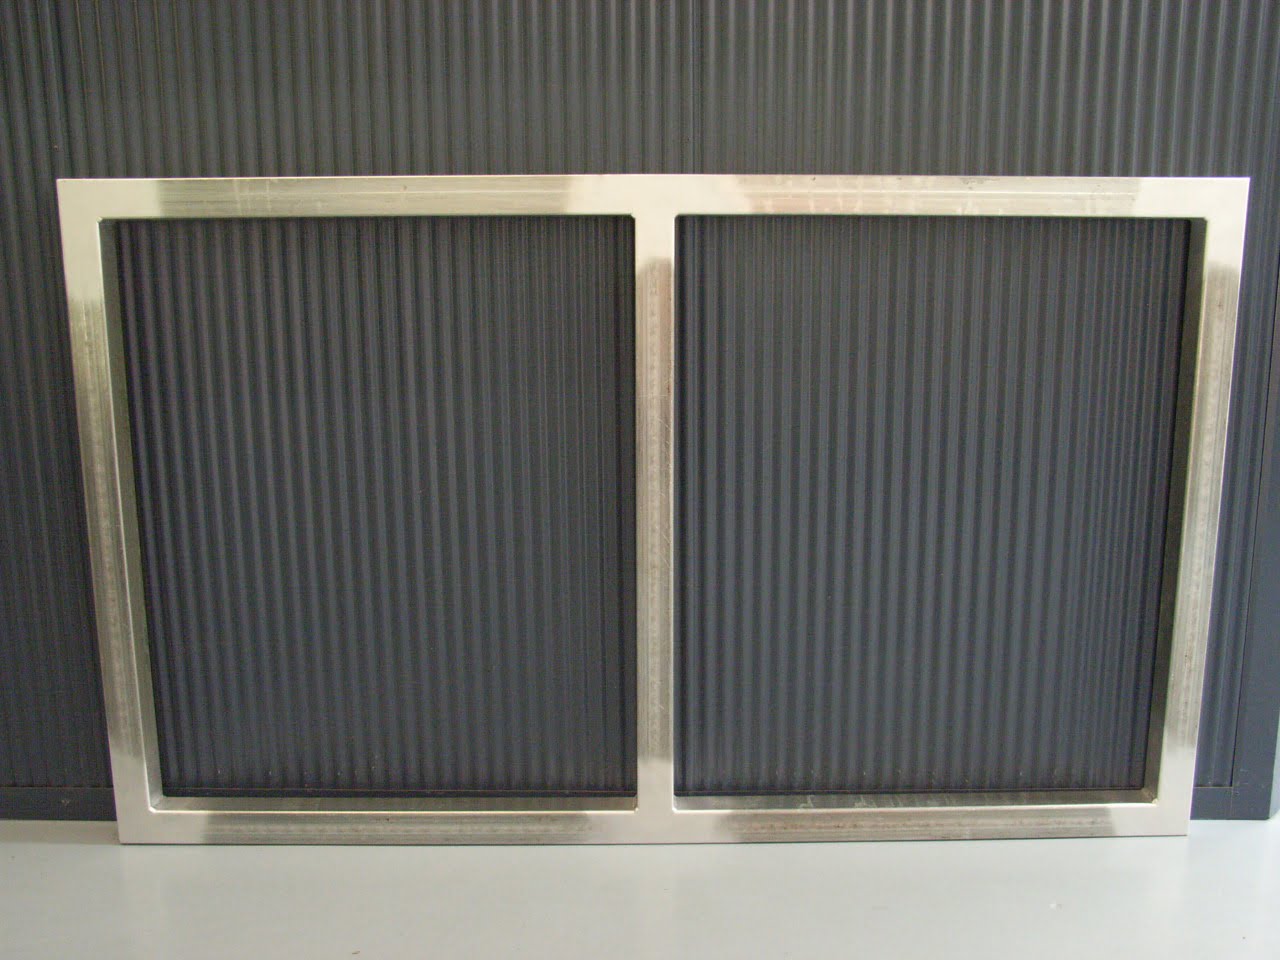 Galvanised Steel Metal Gate Frame FULLY WELDED Suit Driveway